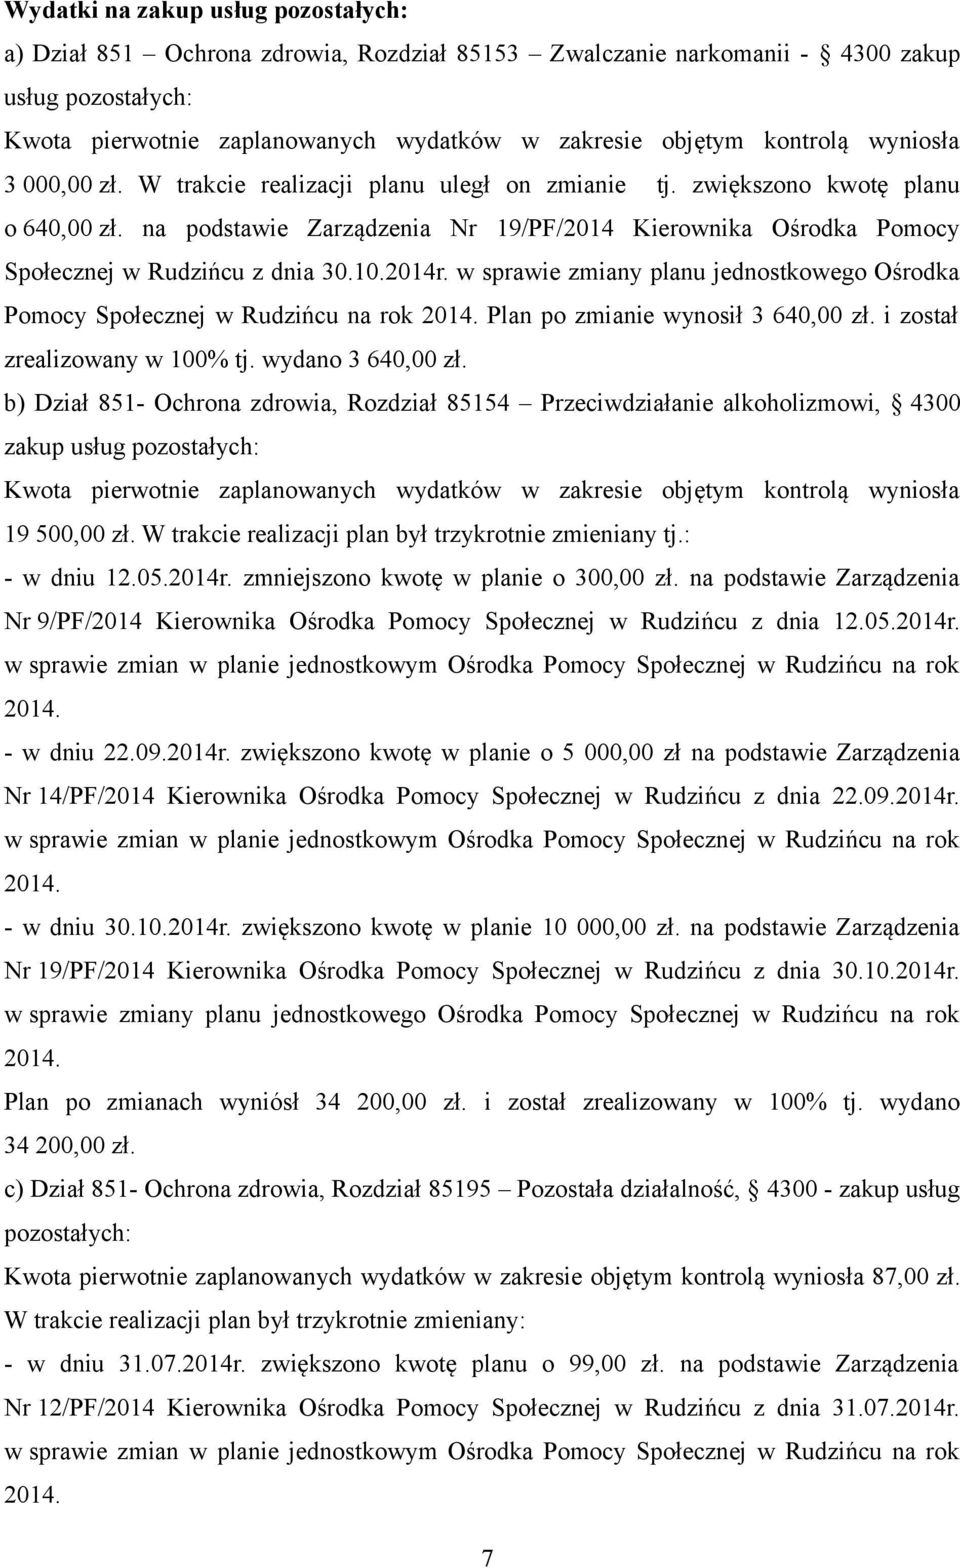 na podstawie Zarządzenia Nr 19/PF/2014 Kierownika Ośrodka Pomocy Społecznej w Rudzińcu z dnia 30.10.2014r.